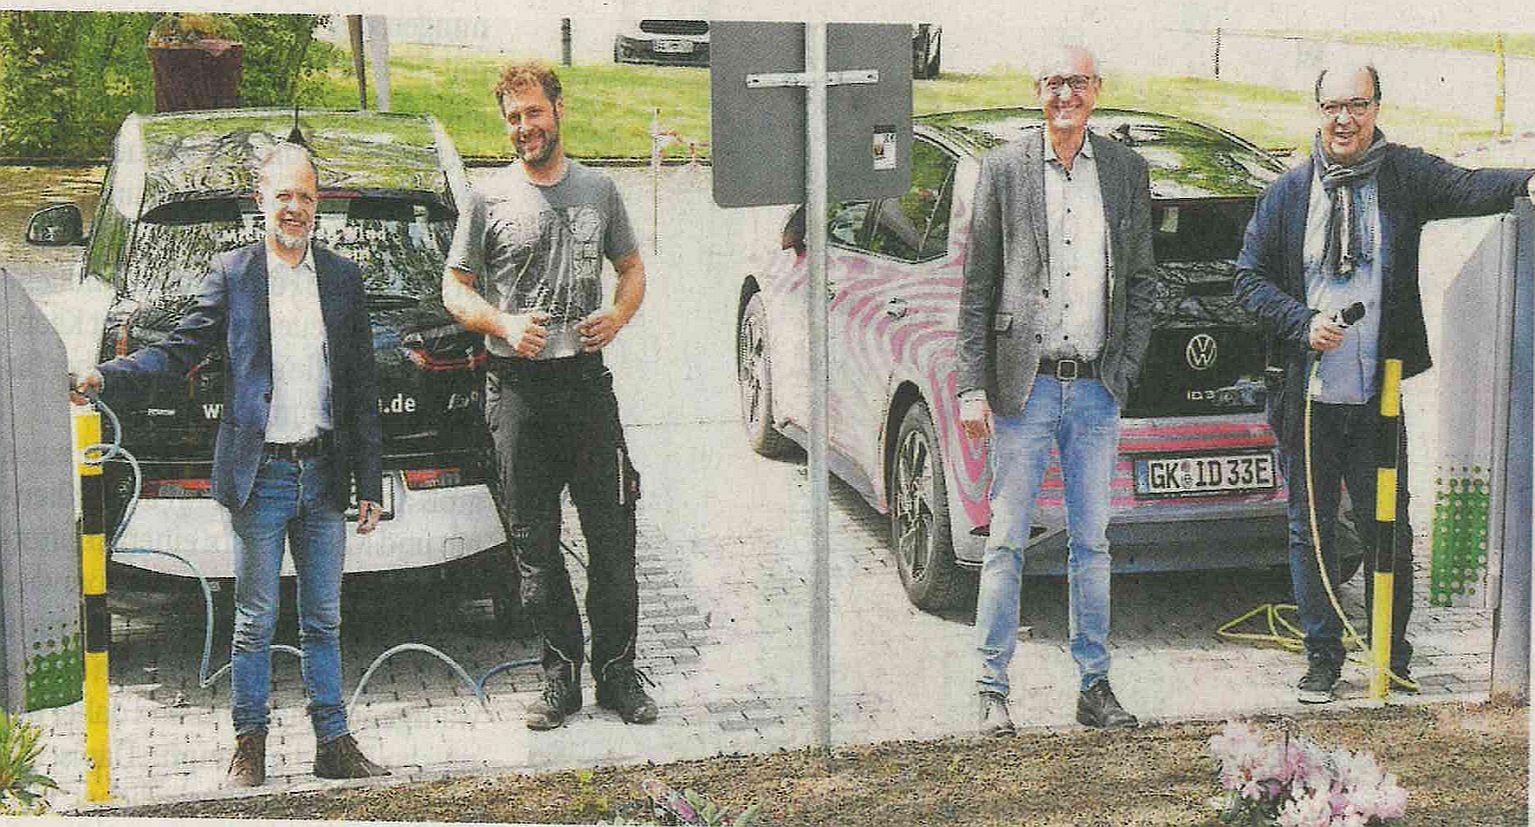 Stecker statt Zapfpistole: Rainer Rißmayer und Dr. Manfred Körber (v.r., beide Neii-Breuning-Haus) sowie Martin Holt-grewe und Rene Pätzold (v.l.) auf dem Parkplatz des Neii-Breuning-Hauses.